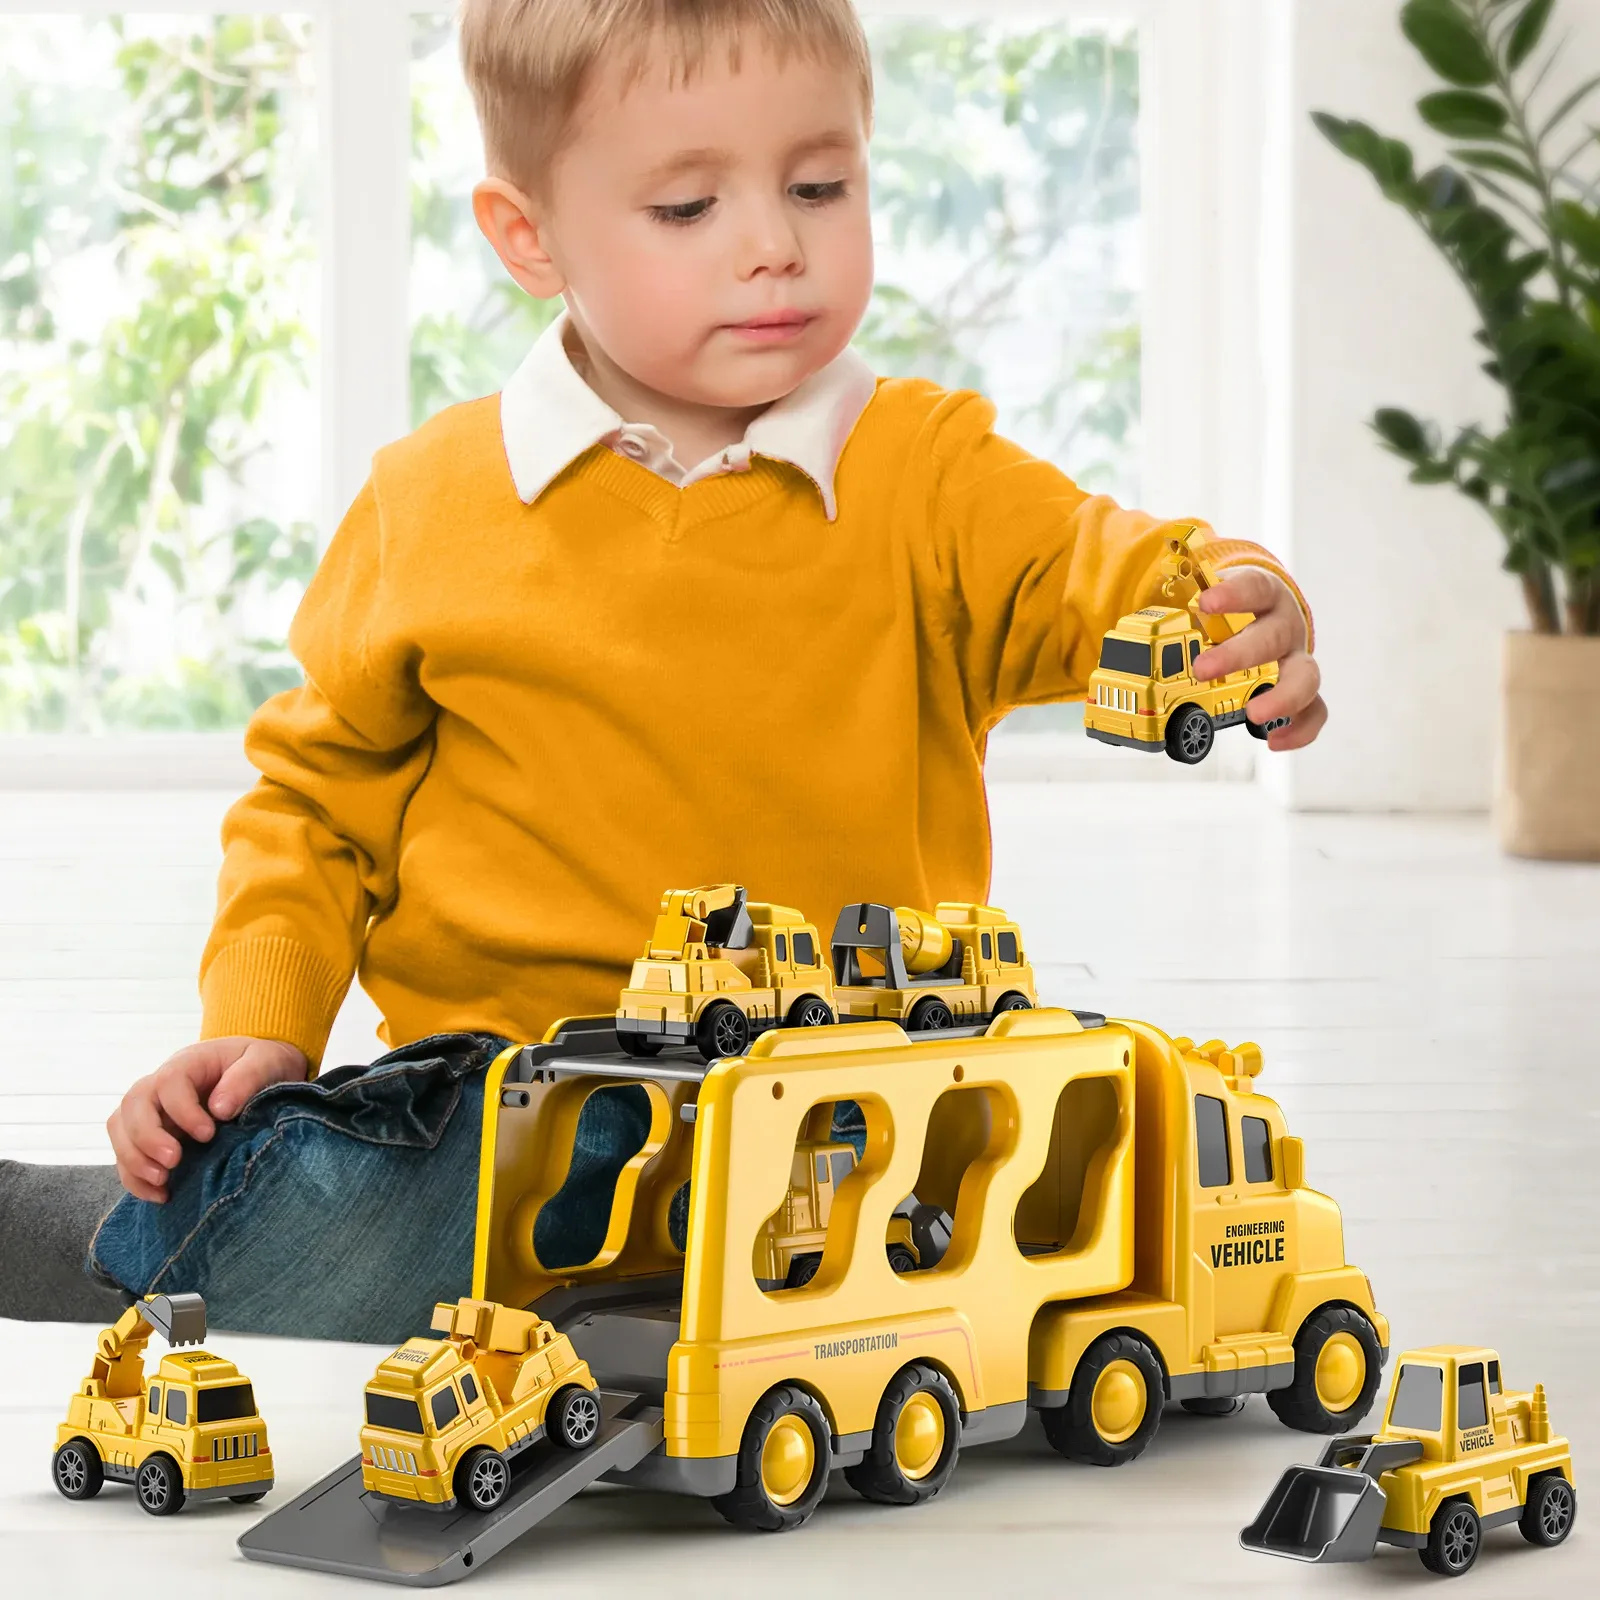 CARS TEMI Carrier Carrier Juguetes CARROS CARS INGENIERÍA VELUCHOS EXCAVADOR EXCAVATOR El modelo de camión de excavadores Conjuntos de niños para niños para niños para juguetes